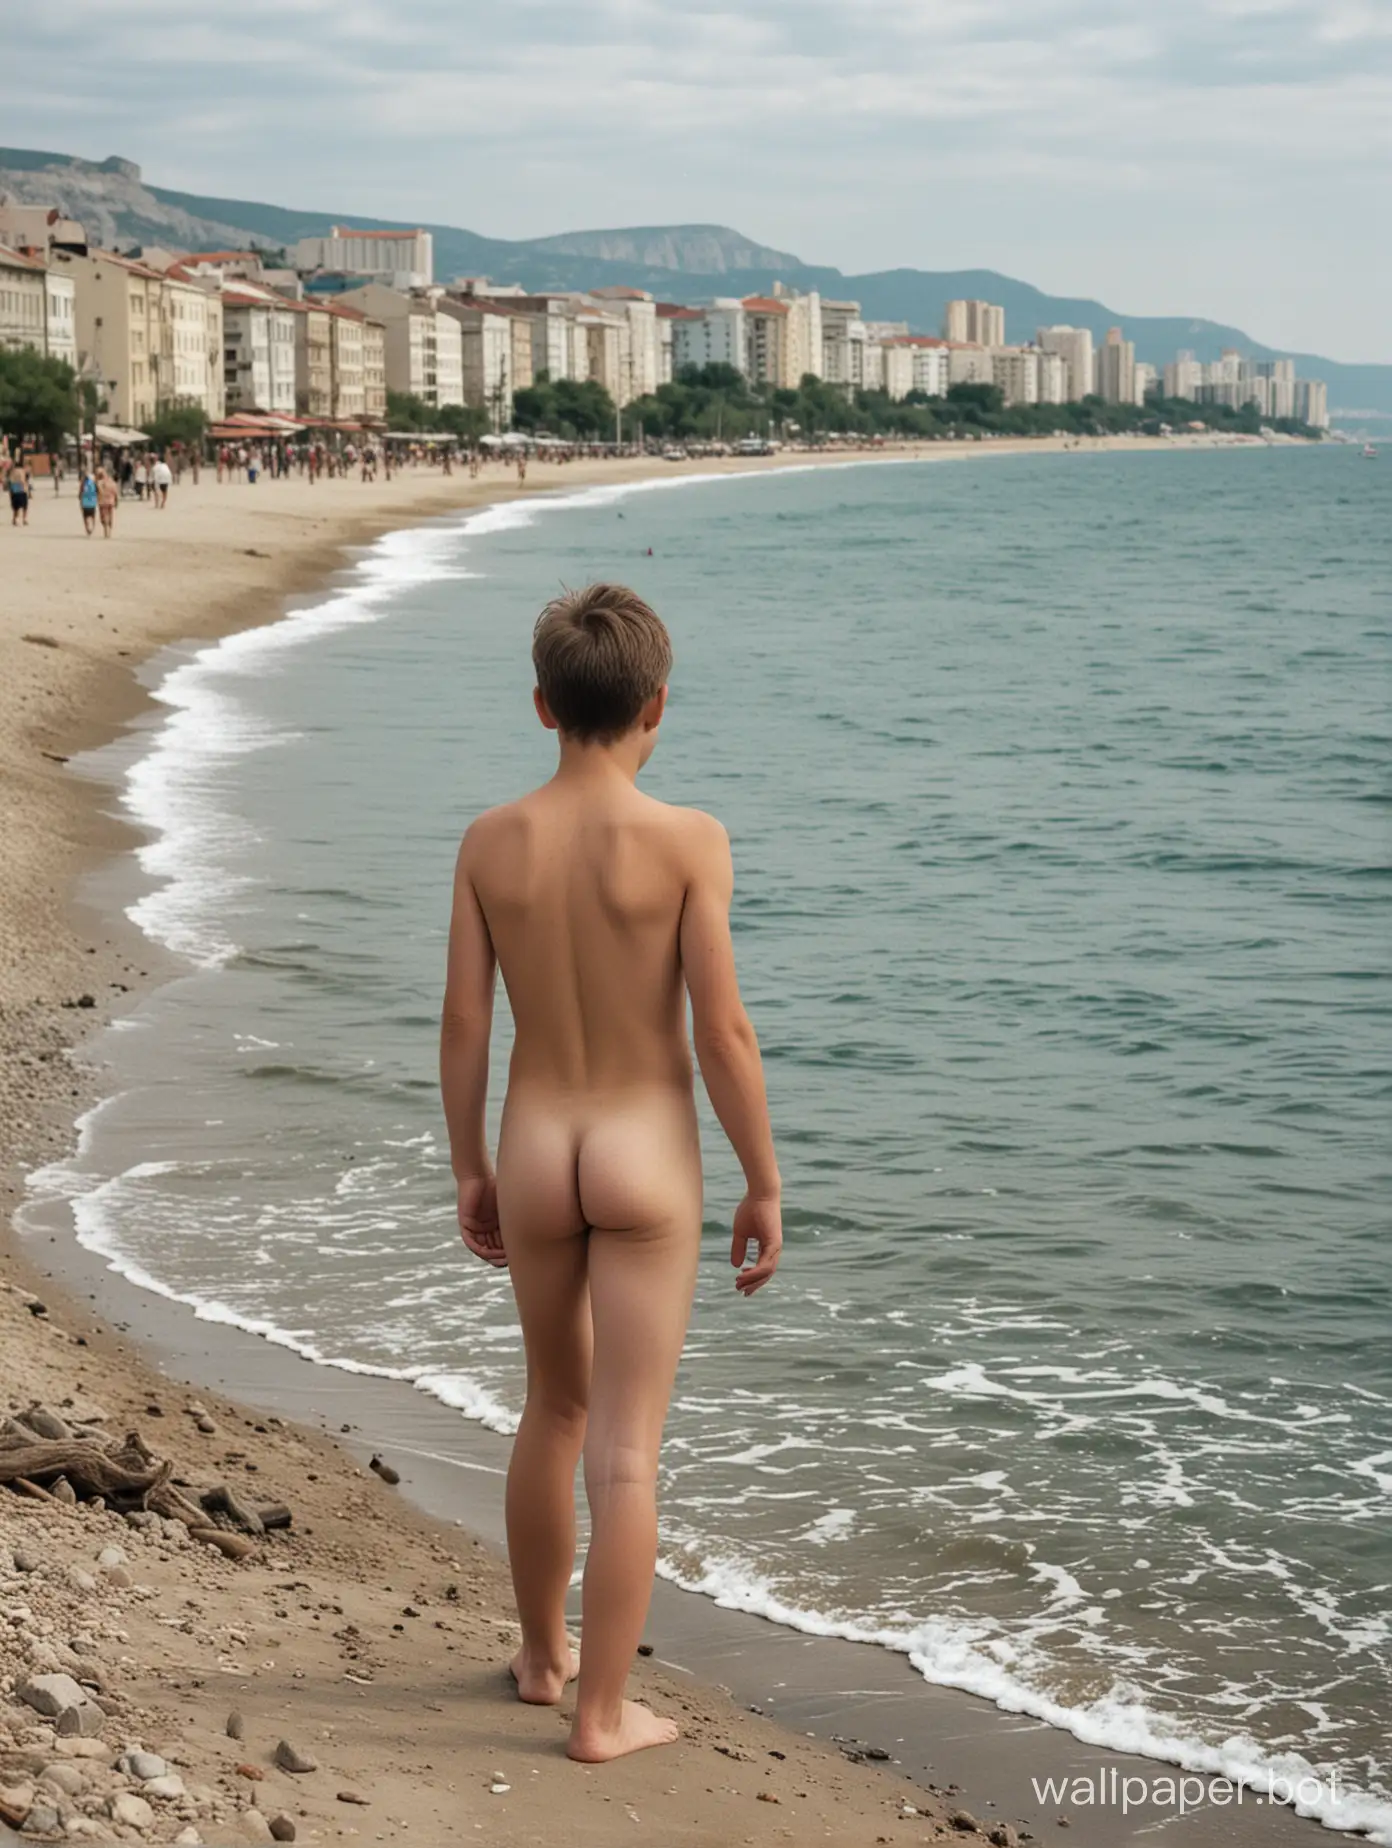 голый советский мальчик 13 лет у моря, вид сзади, в полный рост, Крым, люди рядом, строения на фоне, гуляет вдоль берега